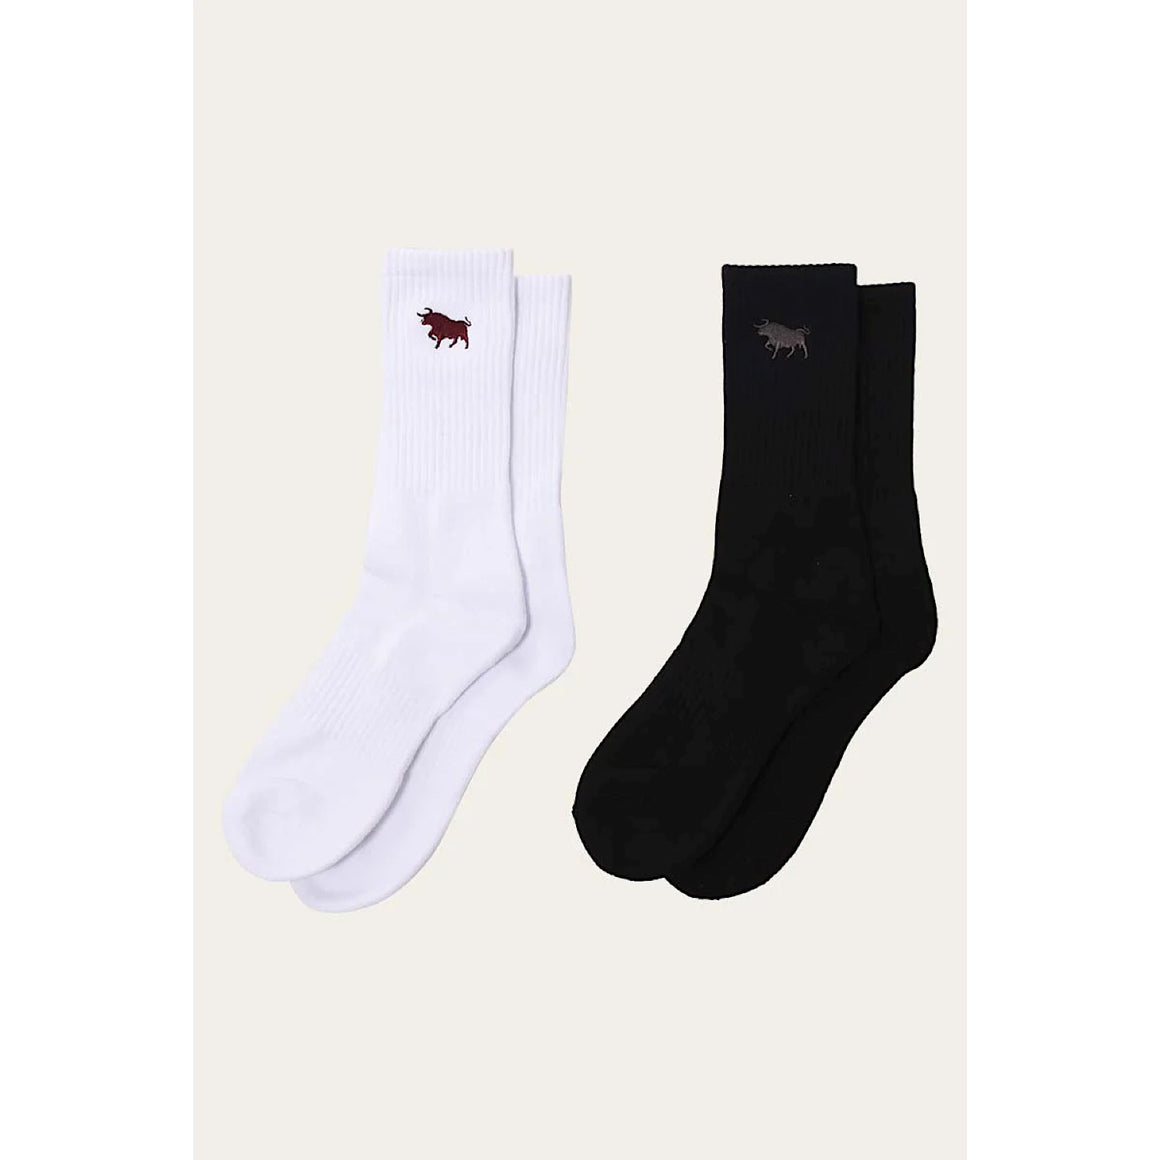 Ringers Western Tracker Socks Combo Pack Black/White